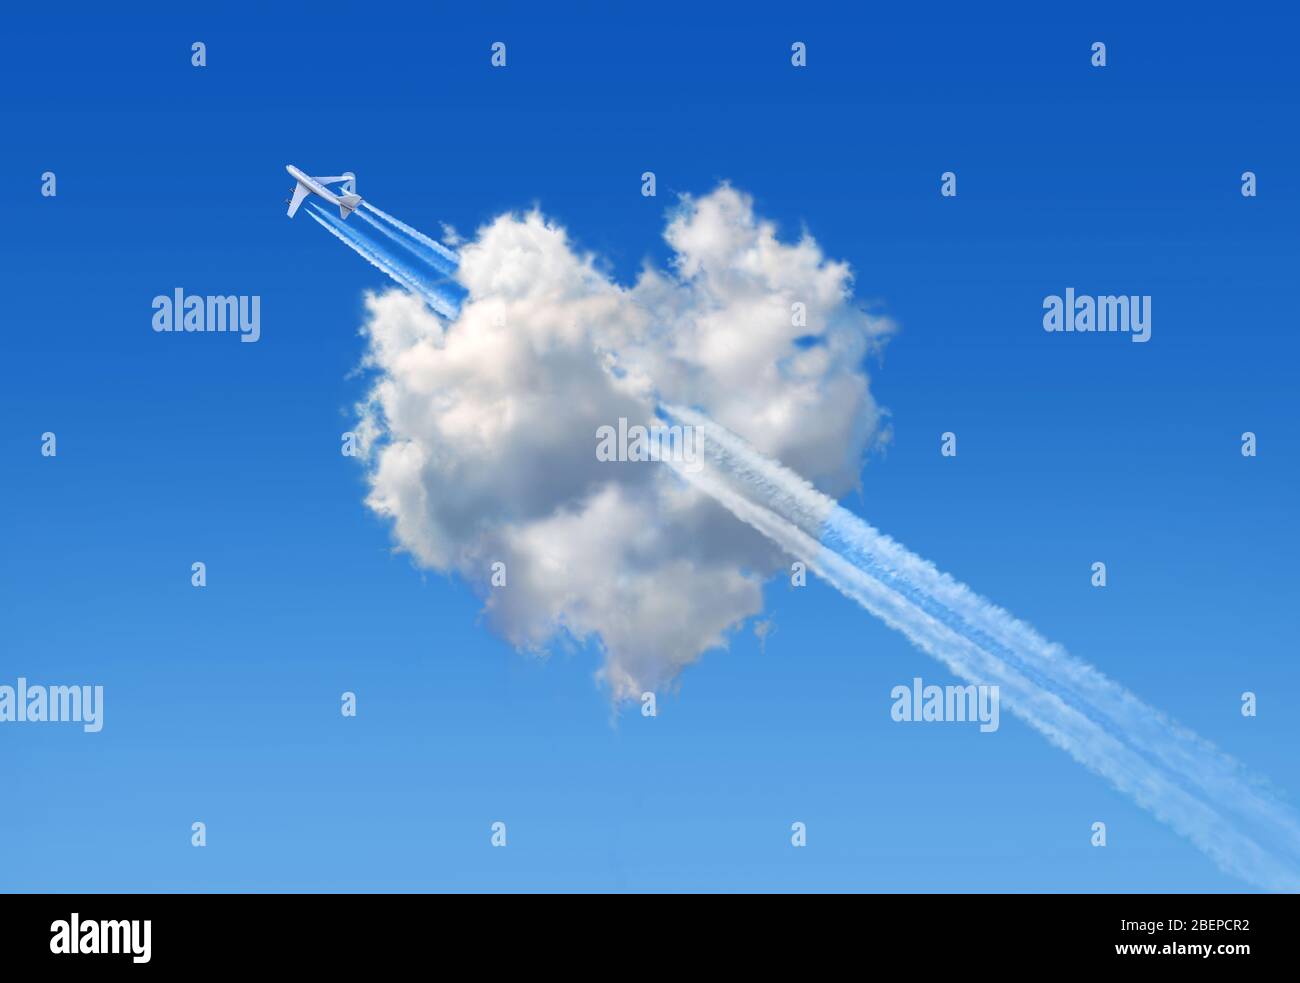 Nuage moelleux avec la forme d'un coeur dans un ciel bleu et un jumbo jet qui le traverse symbolisant une flèche comme signe d'amour. Banque D'Images